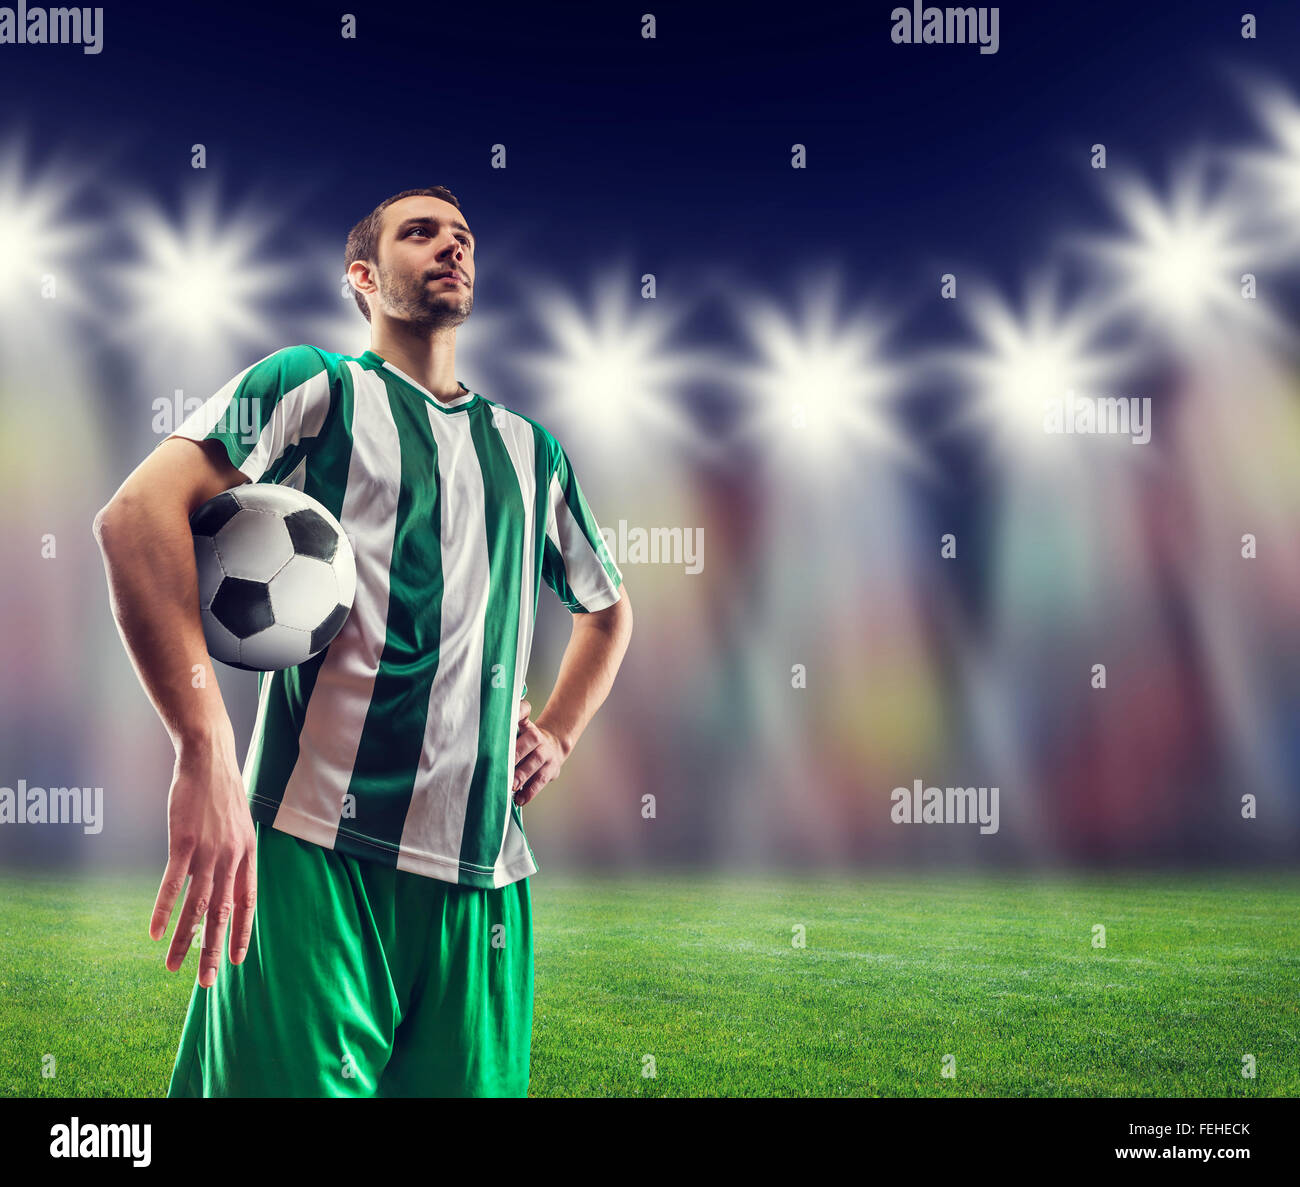 Fußball-Spieler mit ball Stockfoto